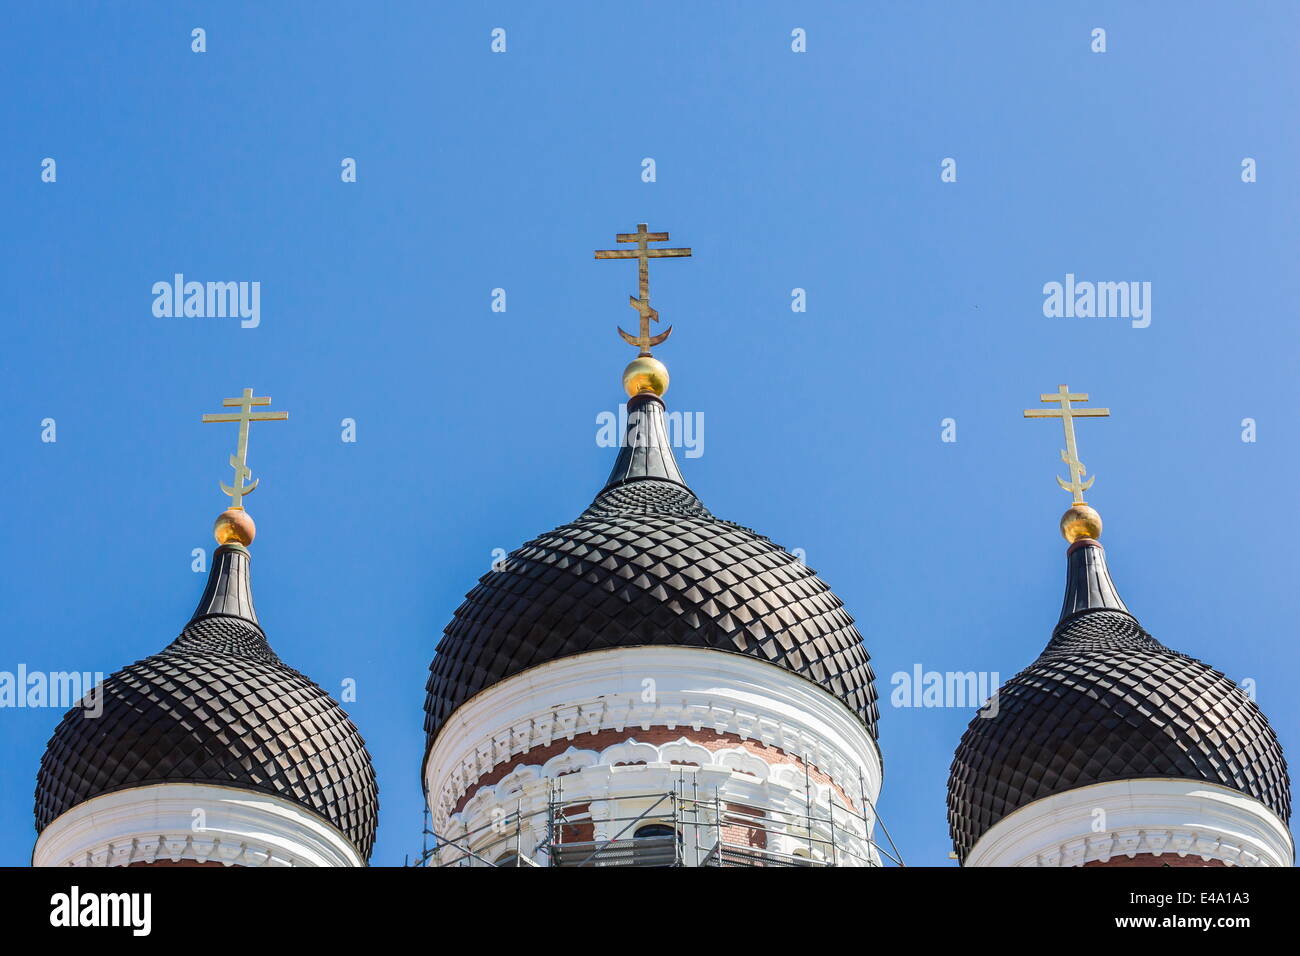 Les clochers à dôme de l'église orthodoxe dans la capitale Tallinn, Estonie, Europe Banque D'Images